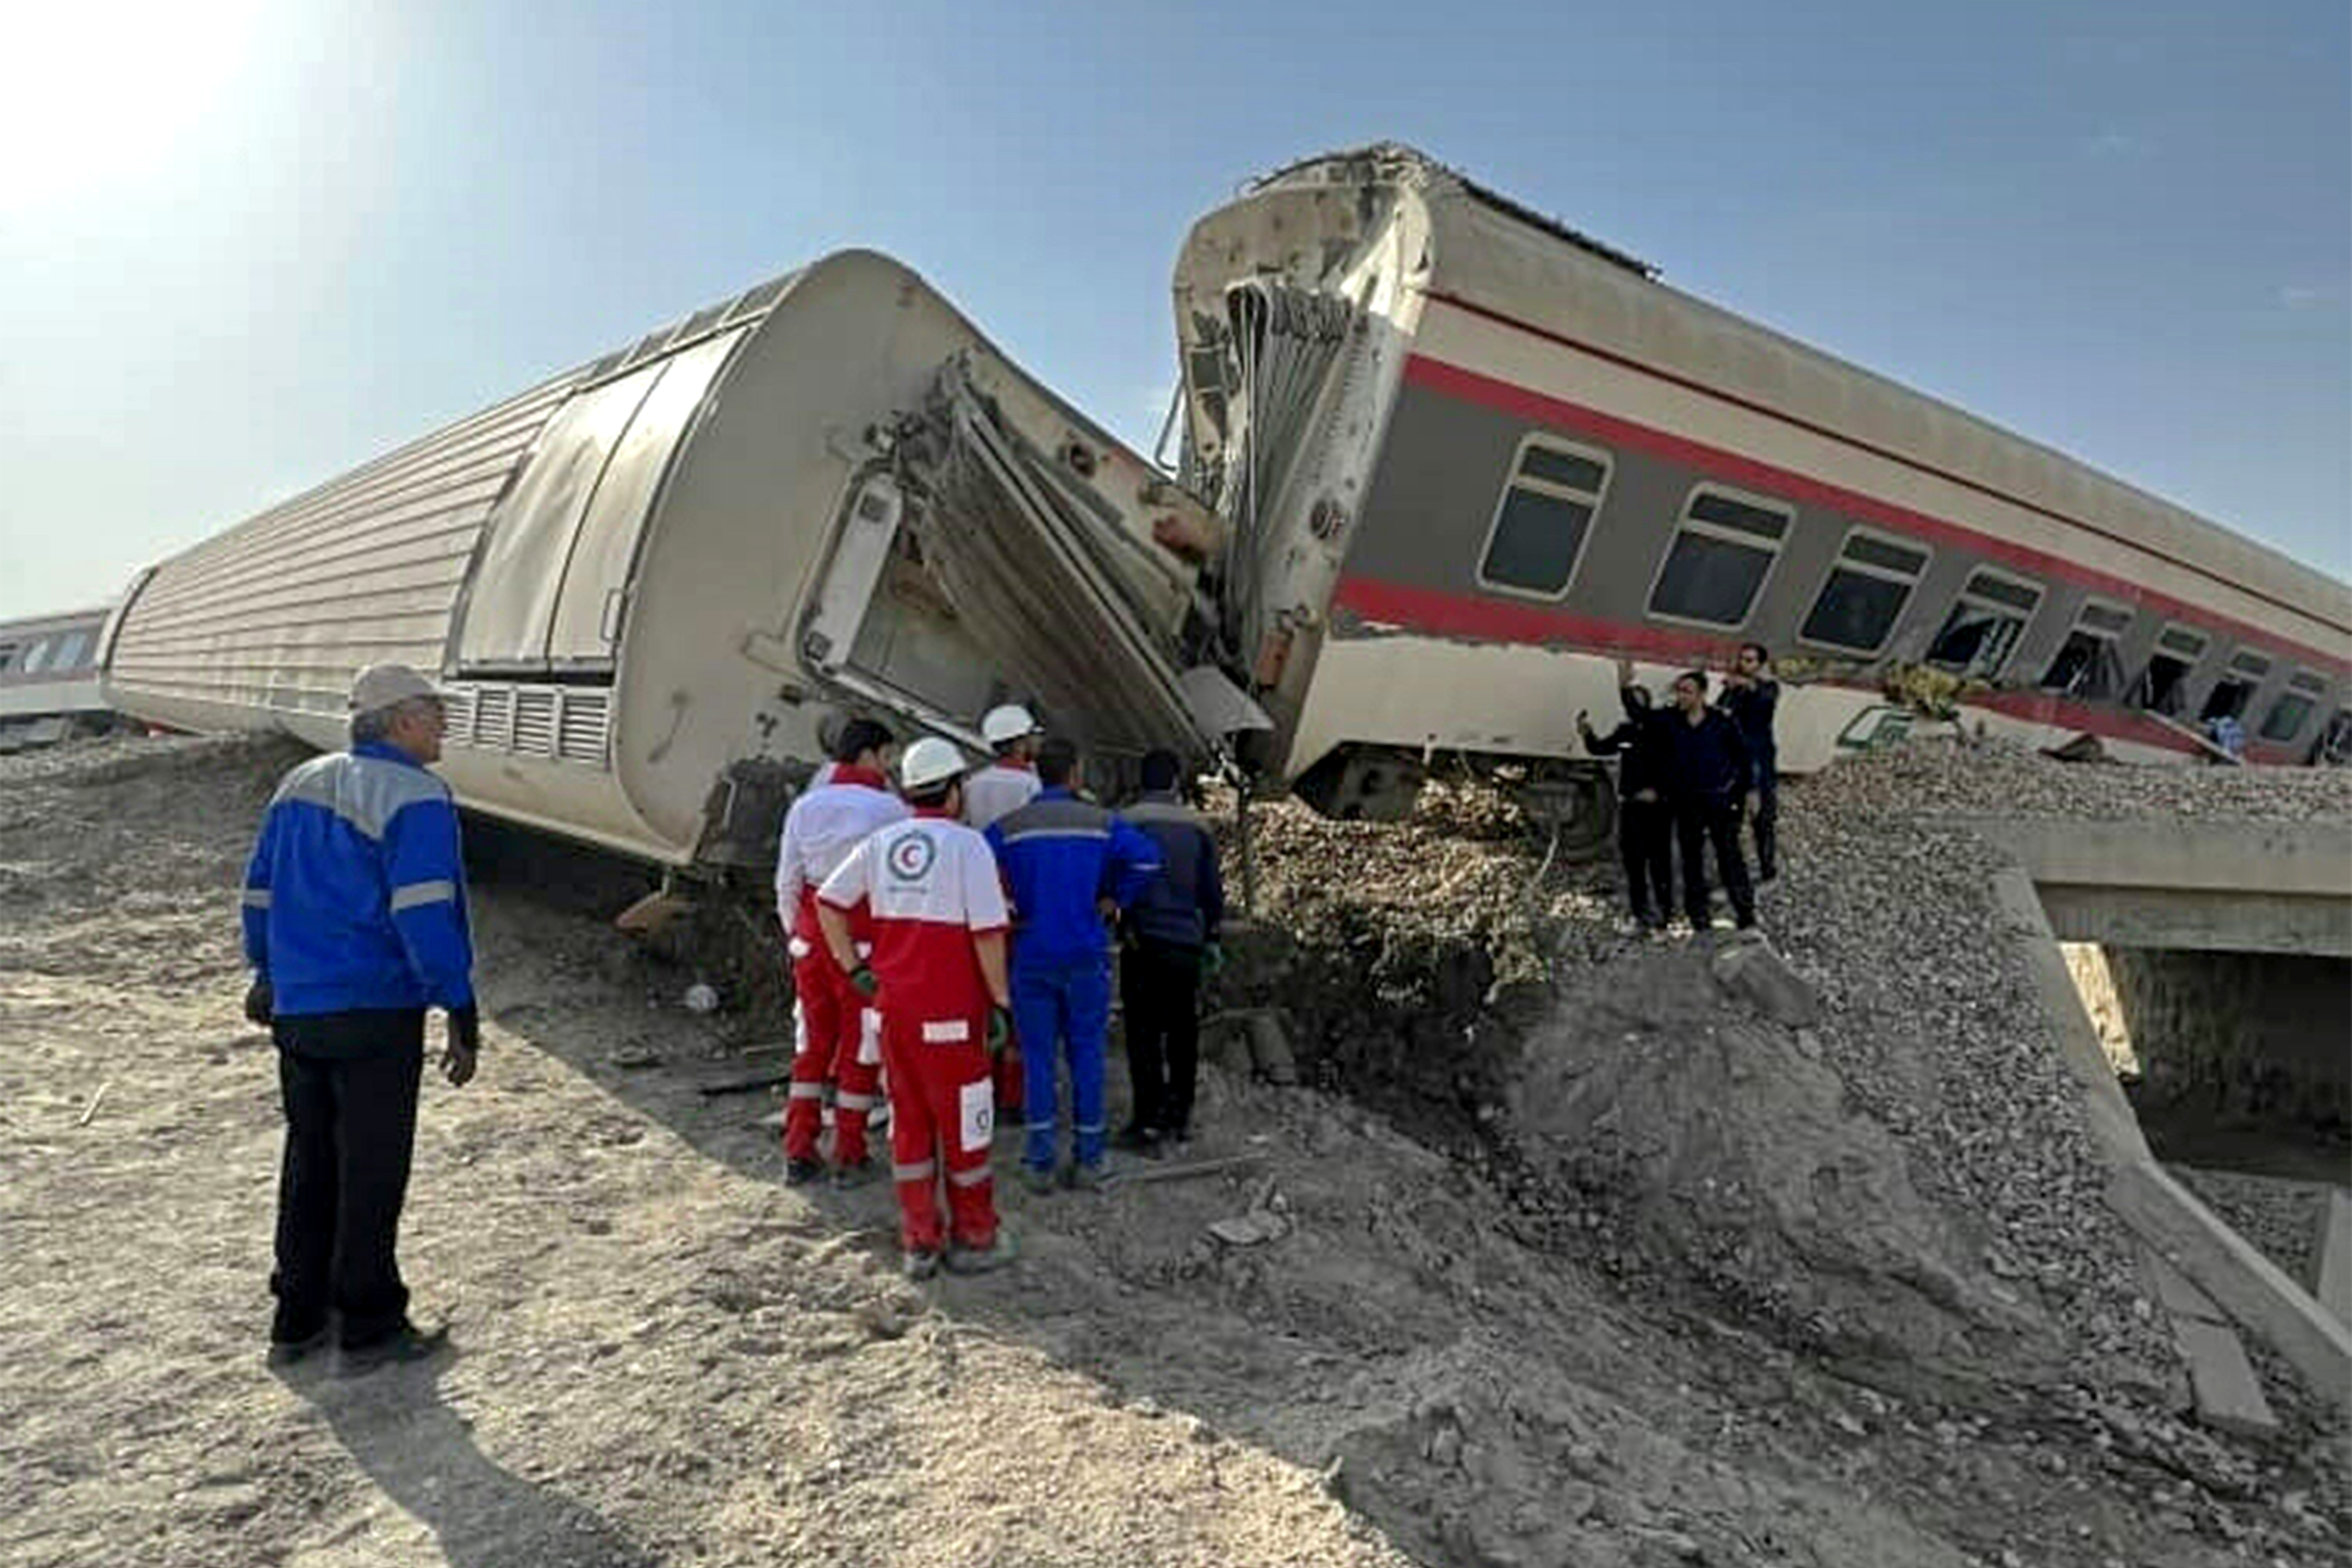 Hiện trường vụ tai nạn tàu hỏa gần thành phố Tabas, miền trung Iran, hôm 8/6. Ảnh: AFP.